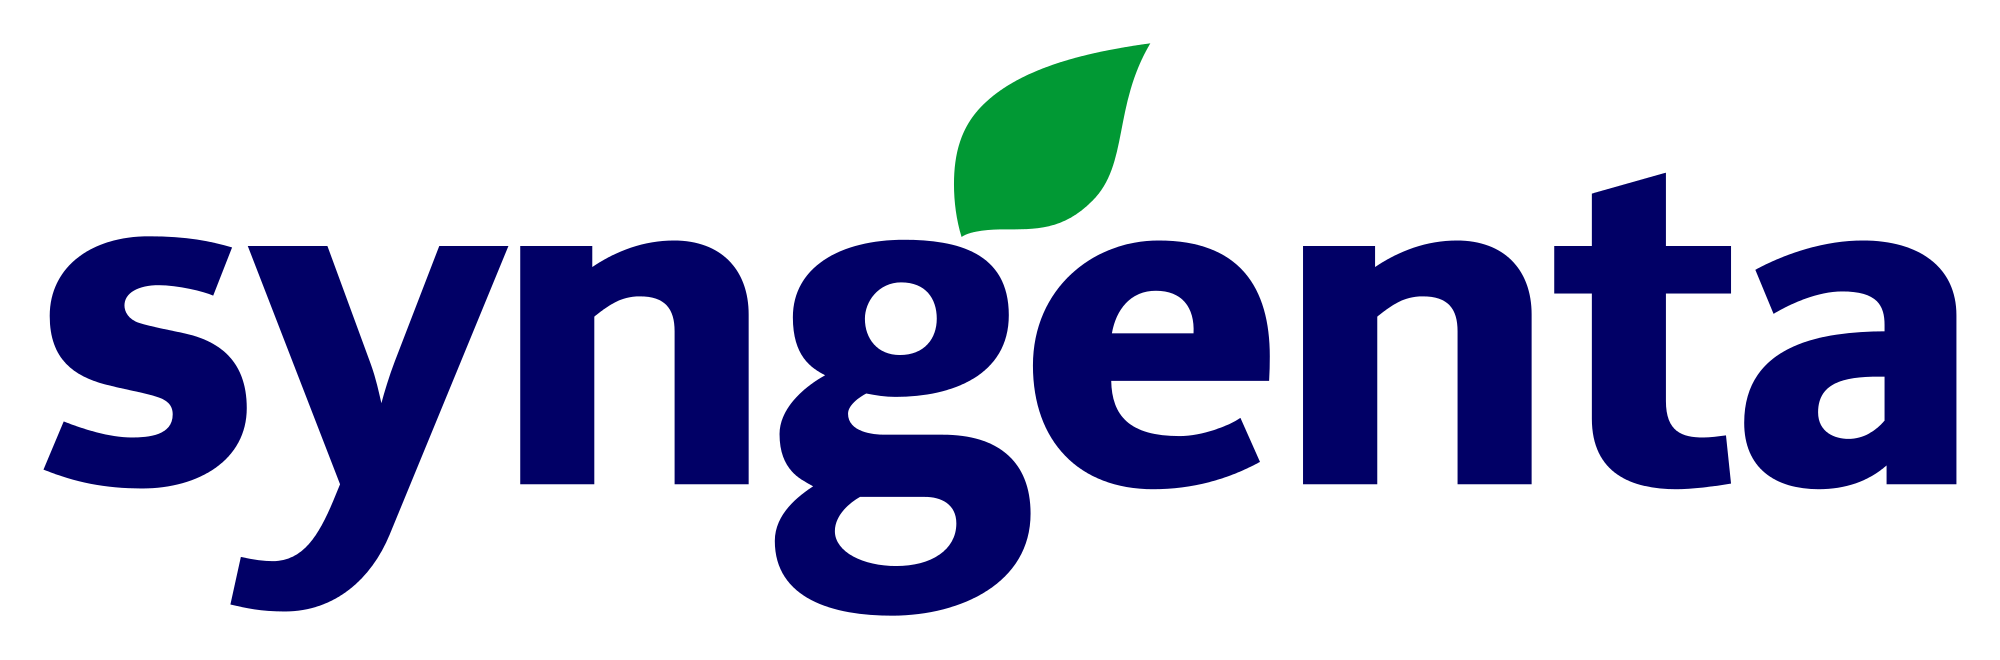 Syngenta_Logo.png